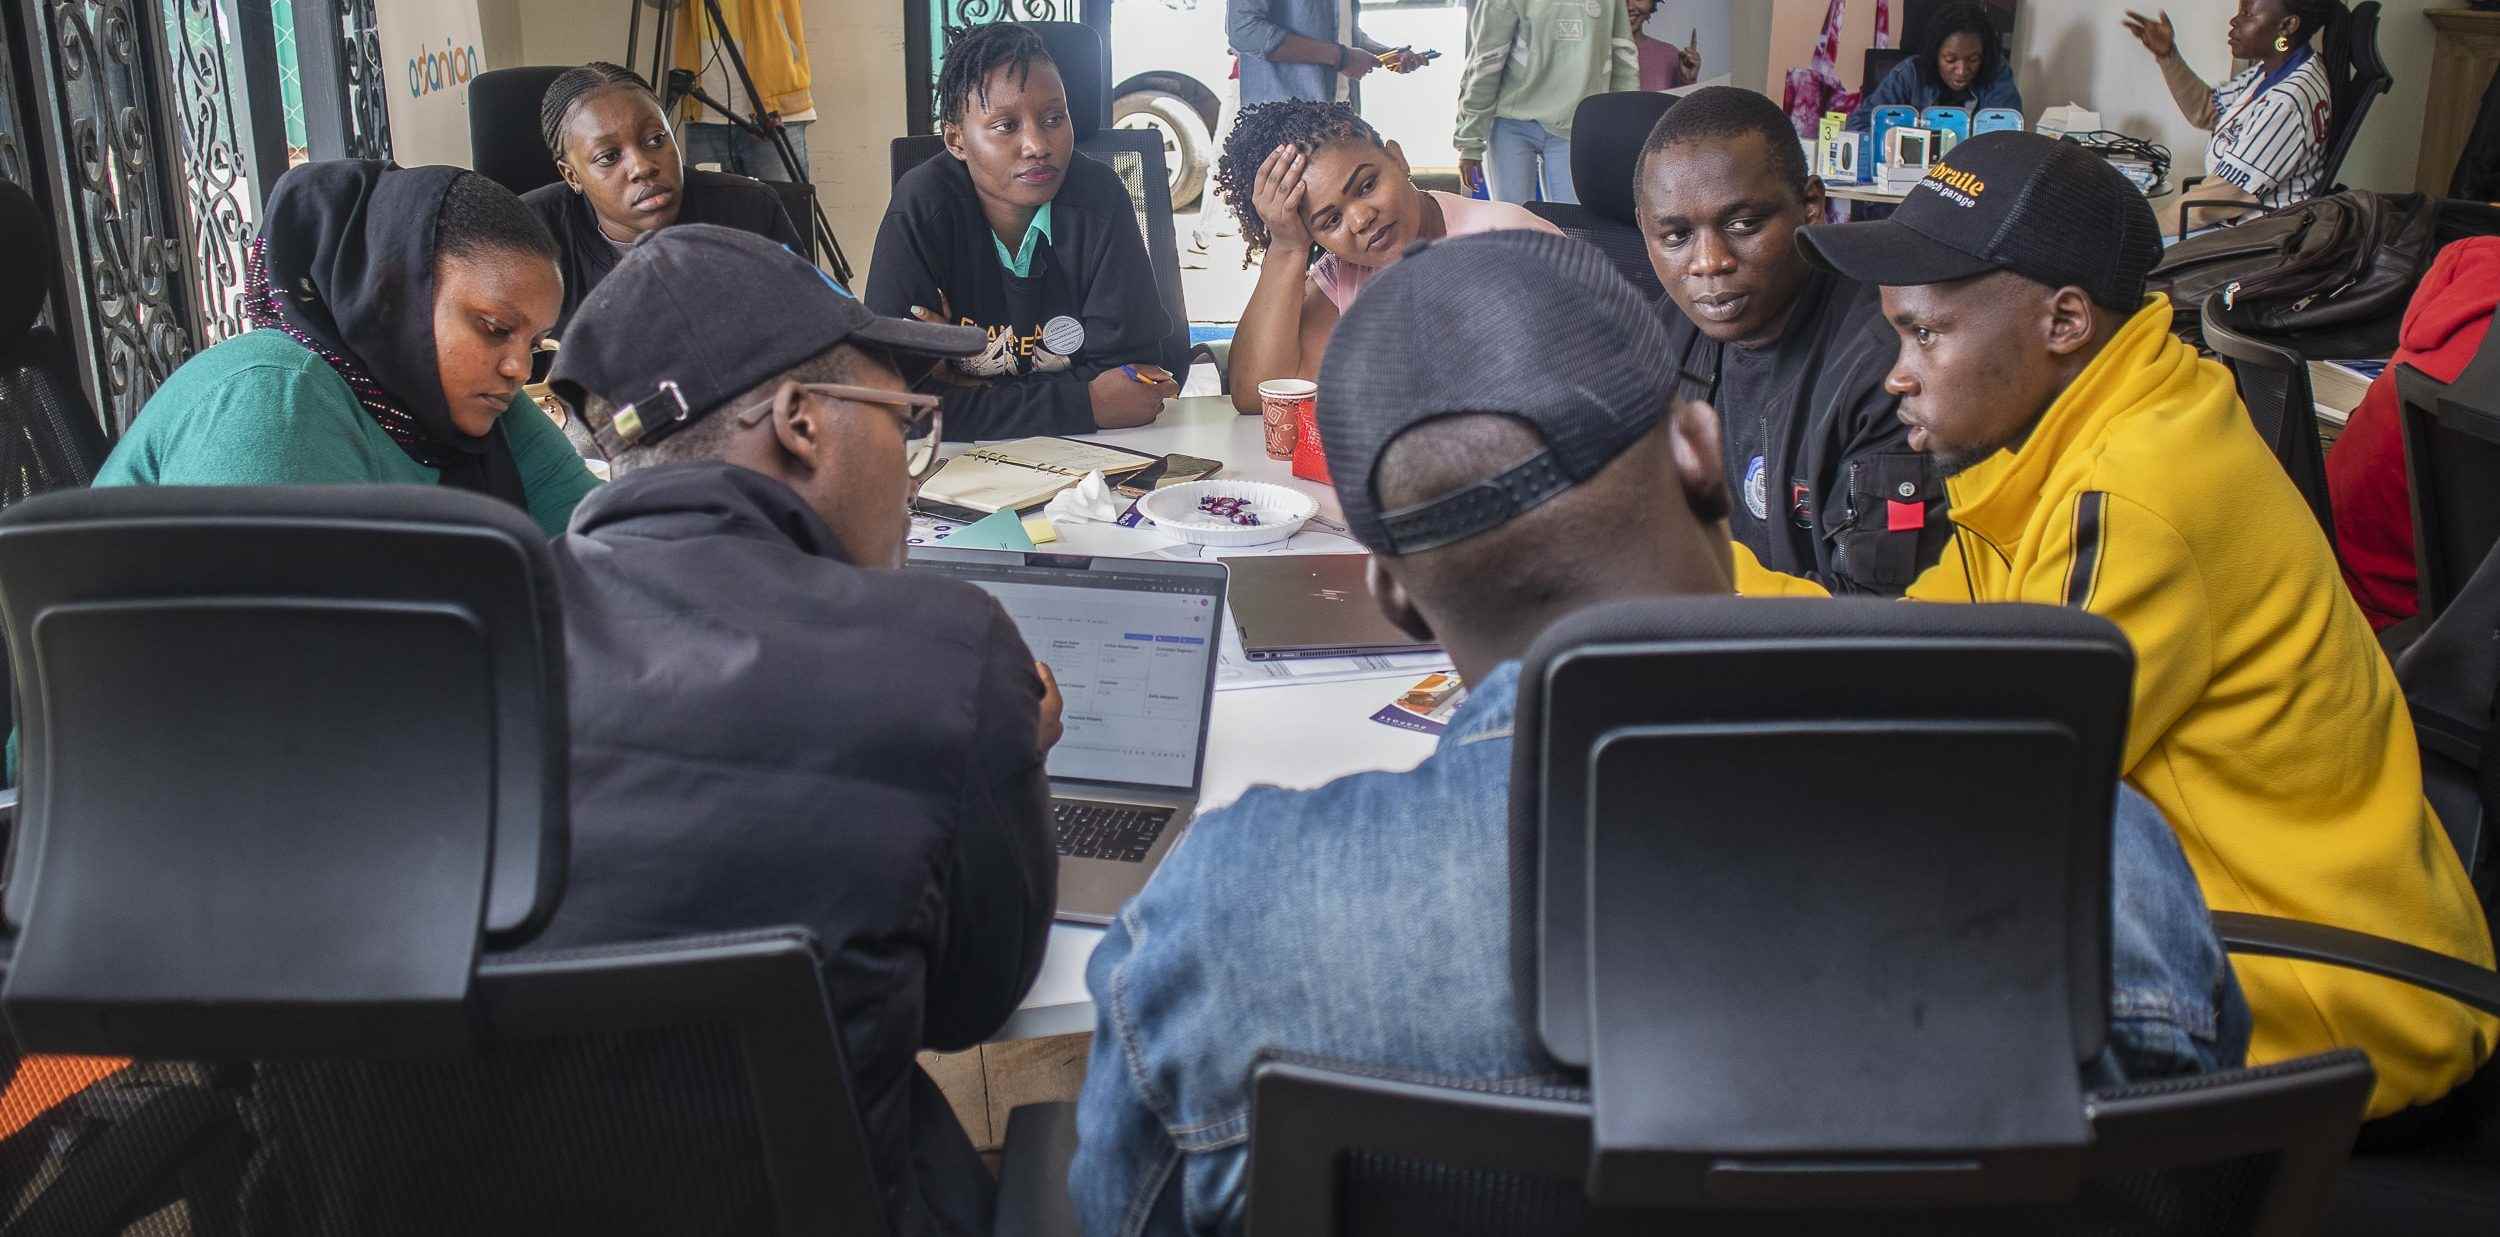 Girişim stüdyosu Adanian Labs, Afrika'daki girişimlerin büyümesini hızlandırıyor